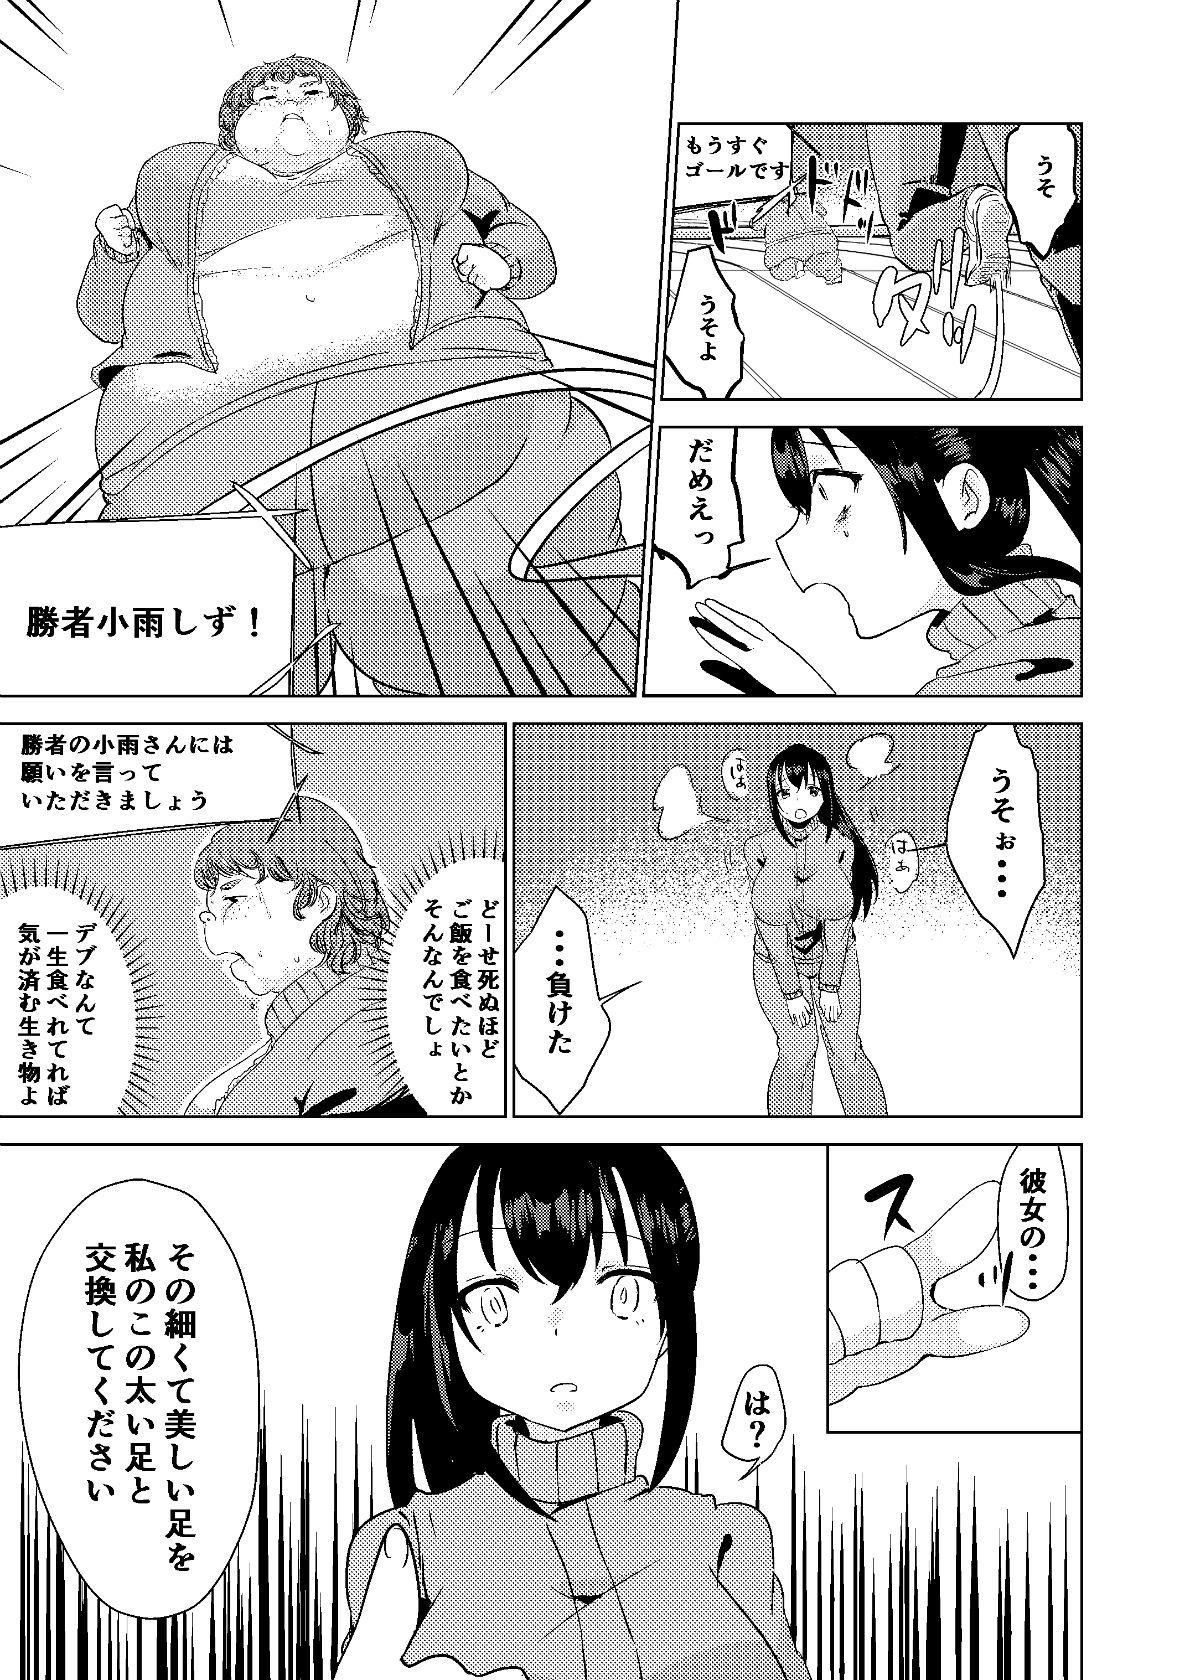 Reverse Kyou kara Watashi wa Anata ni Naru. - Original T Girl - Page 11